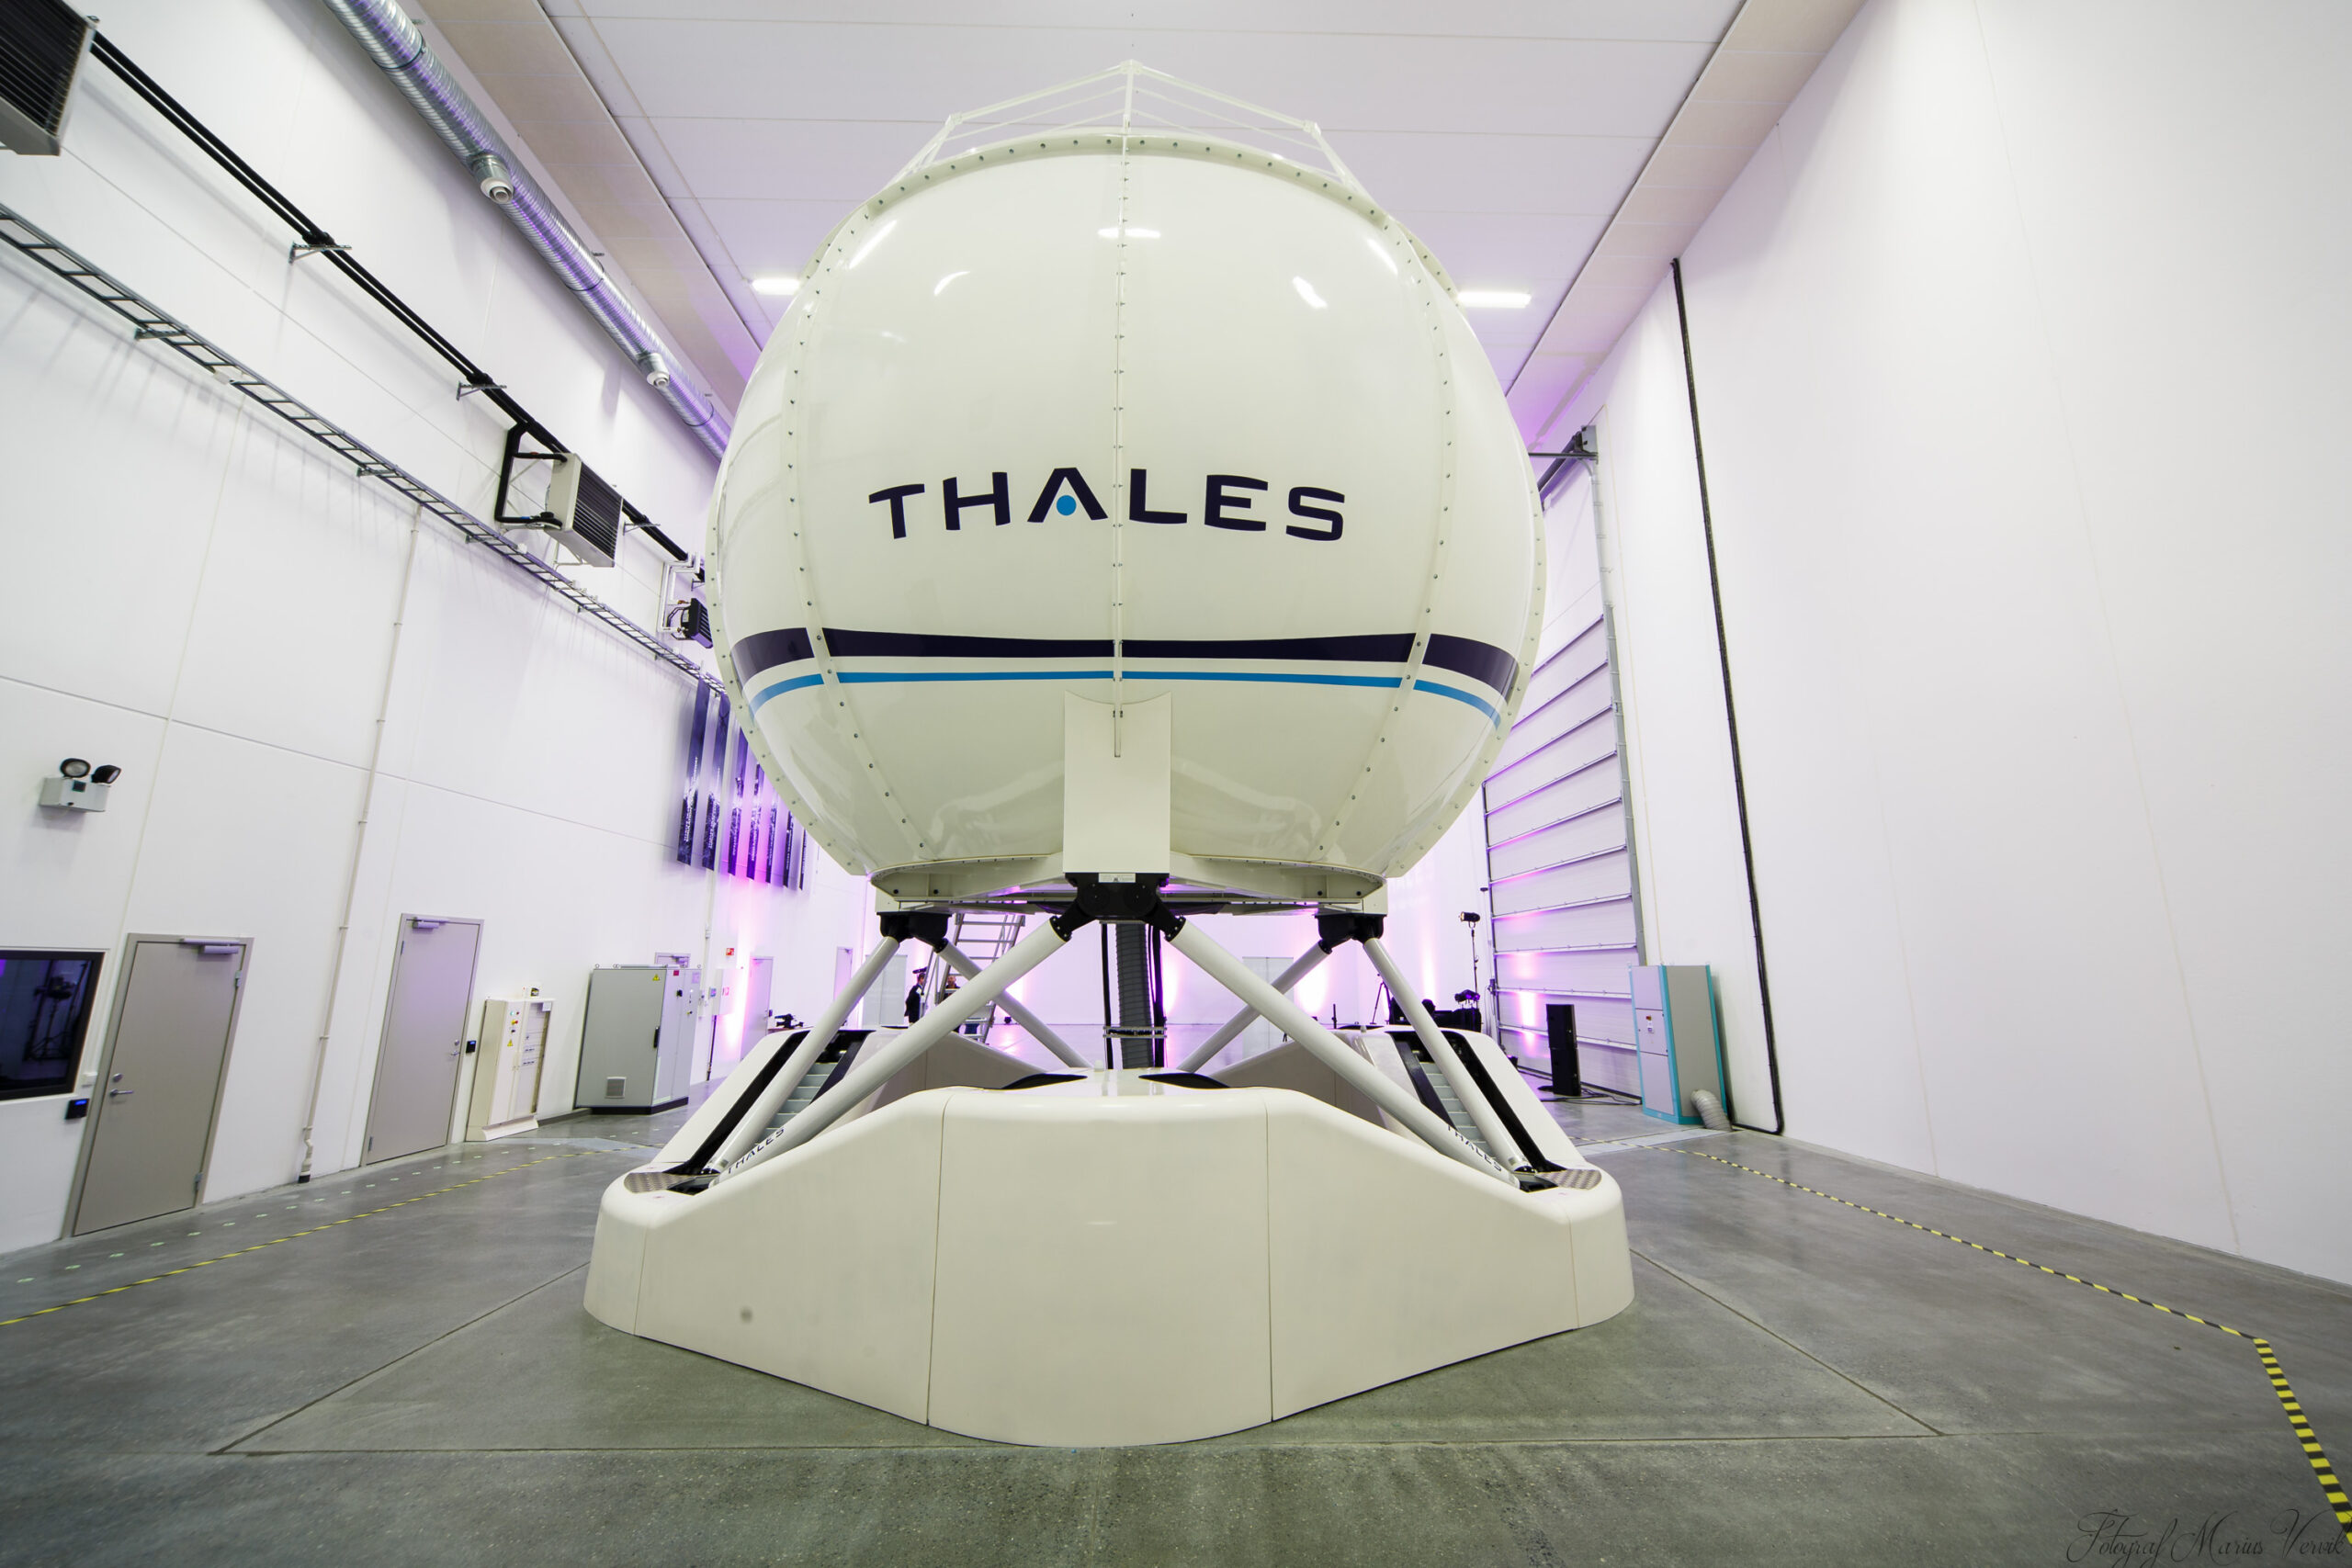 Thales liefert acht Full Flight-Simulatoren an Airbus Helicopters um die H145M-Pilotinnen und Piloten der Bundeswehr auszubilden